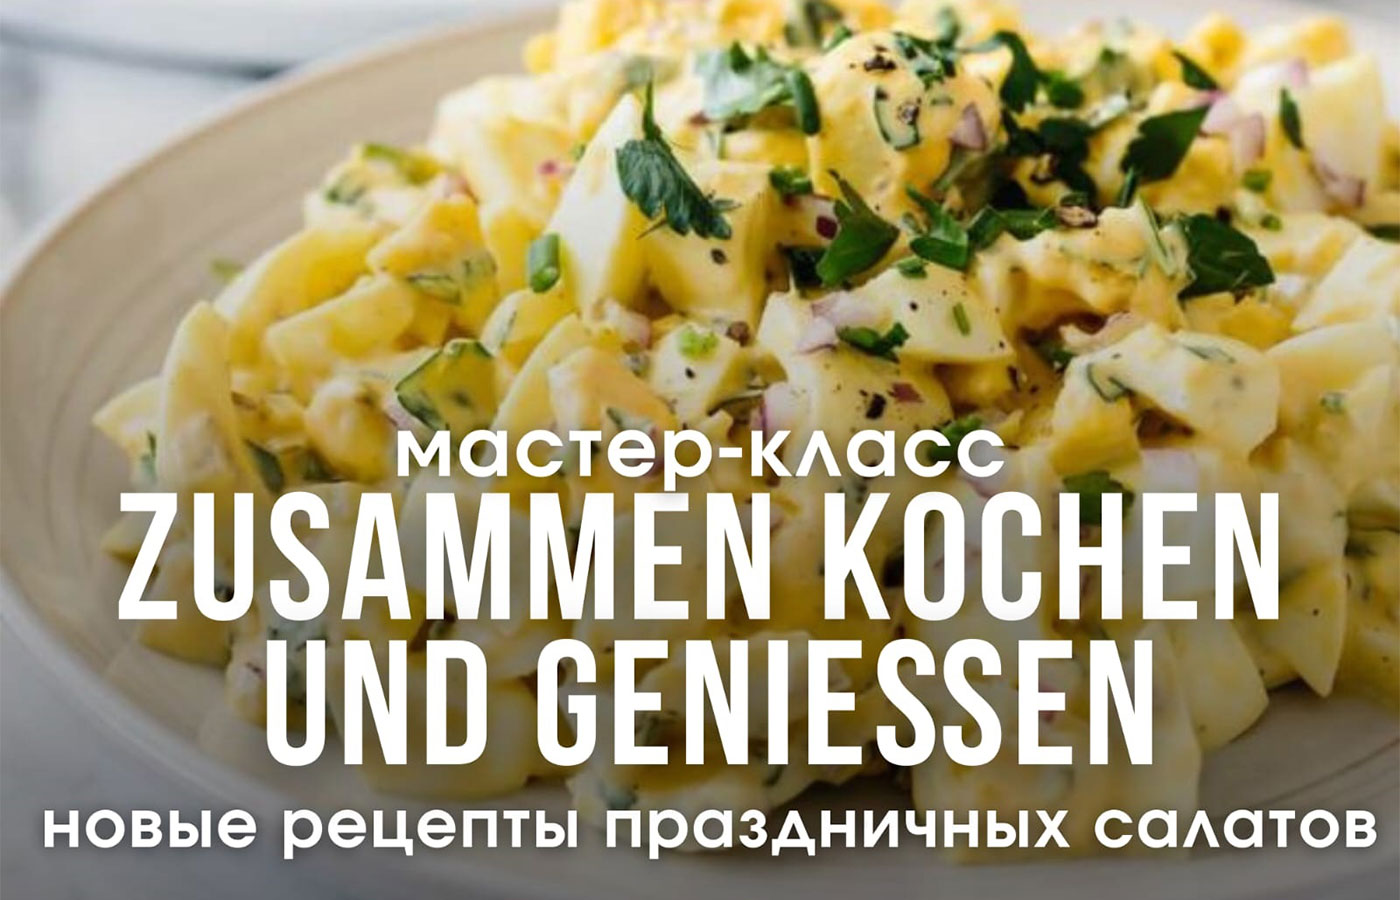 Откройте новые горизонты вкуса, попробовав традиционные немецкие блюда, рецепты которых передавали в семьях переселенцев из поколения в поколение!